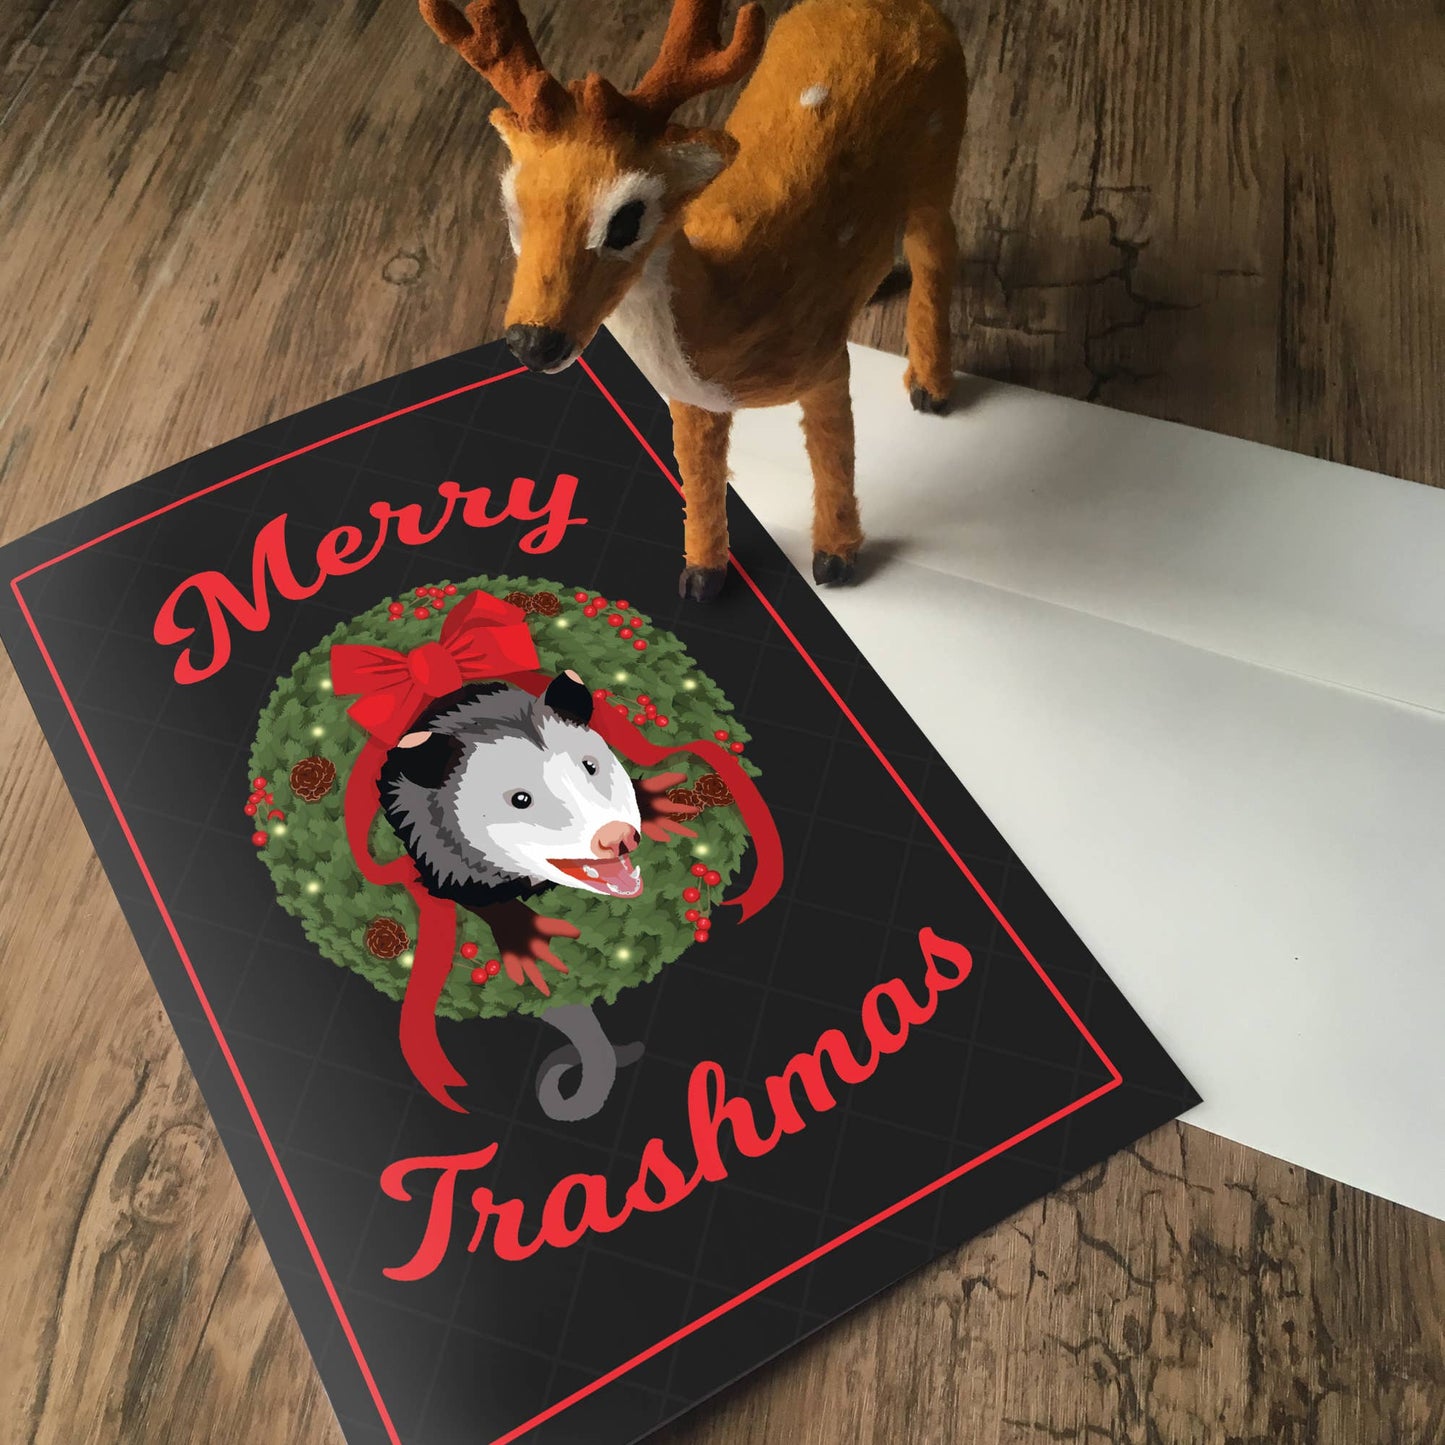 Possum Christmas Card - Merry Trashmas